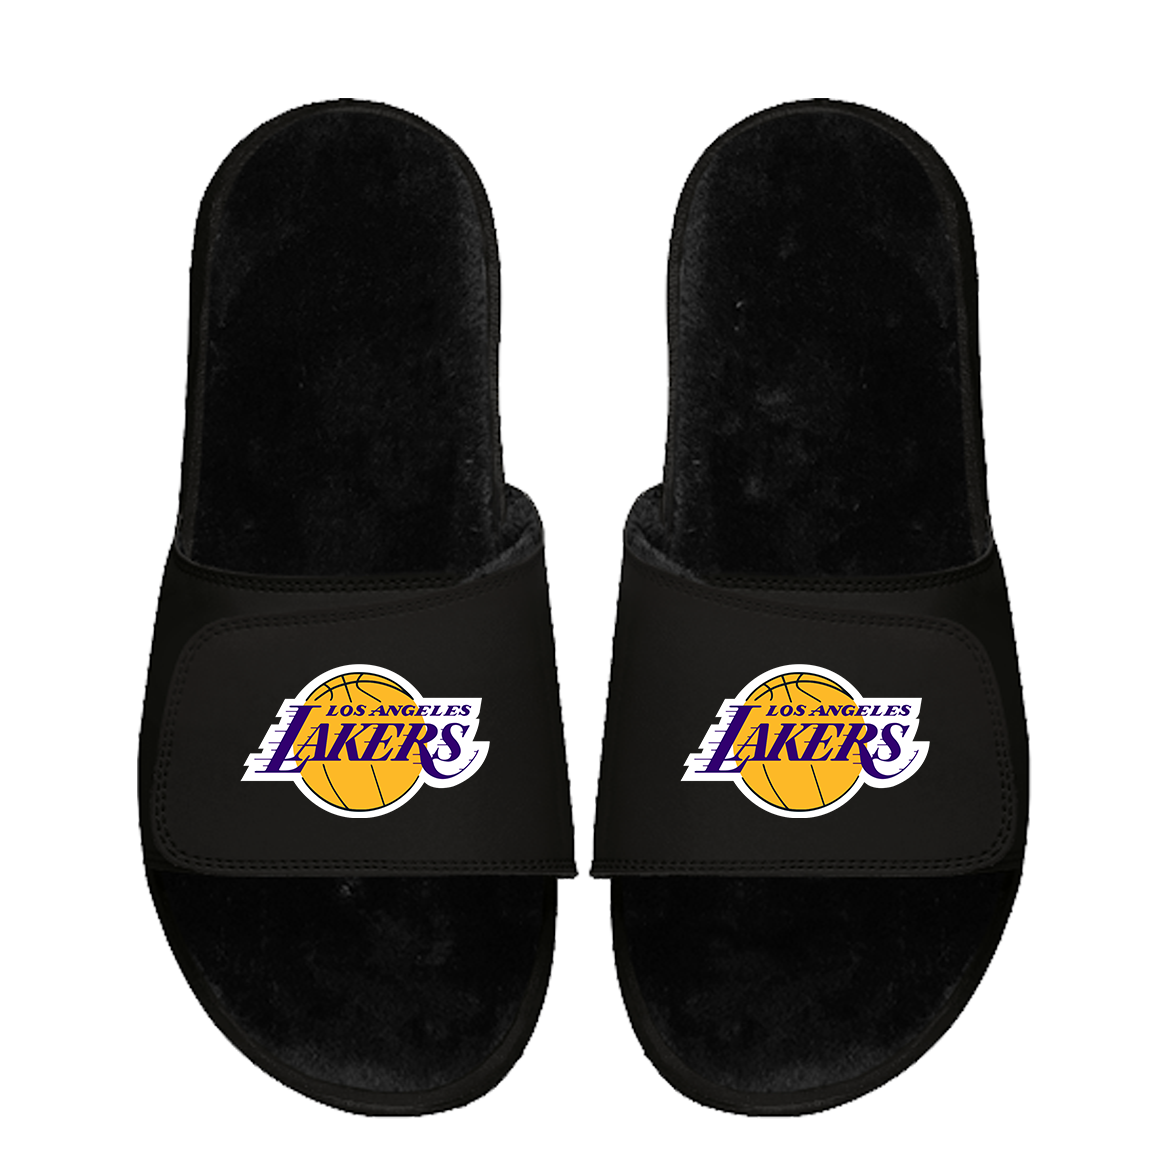 Los Angeles Lakers Primary Black Fur